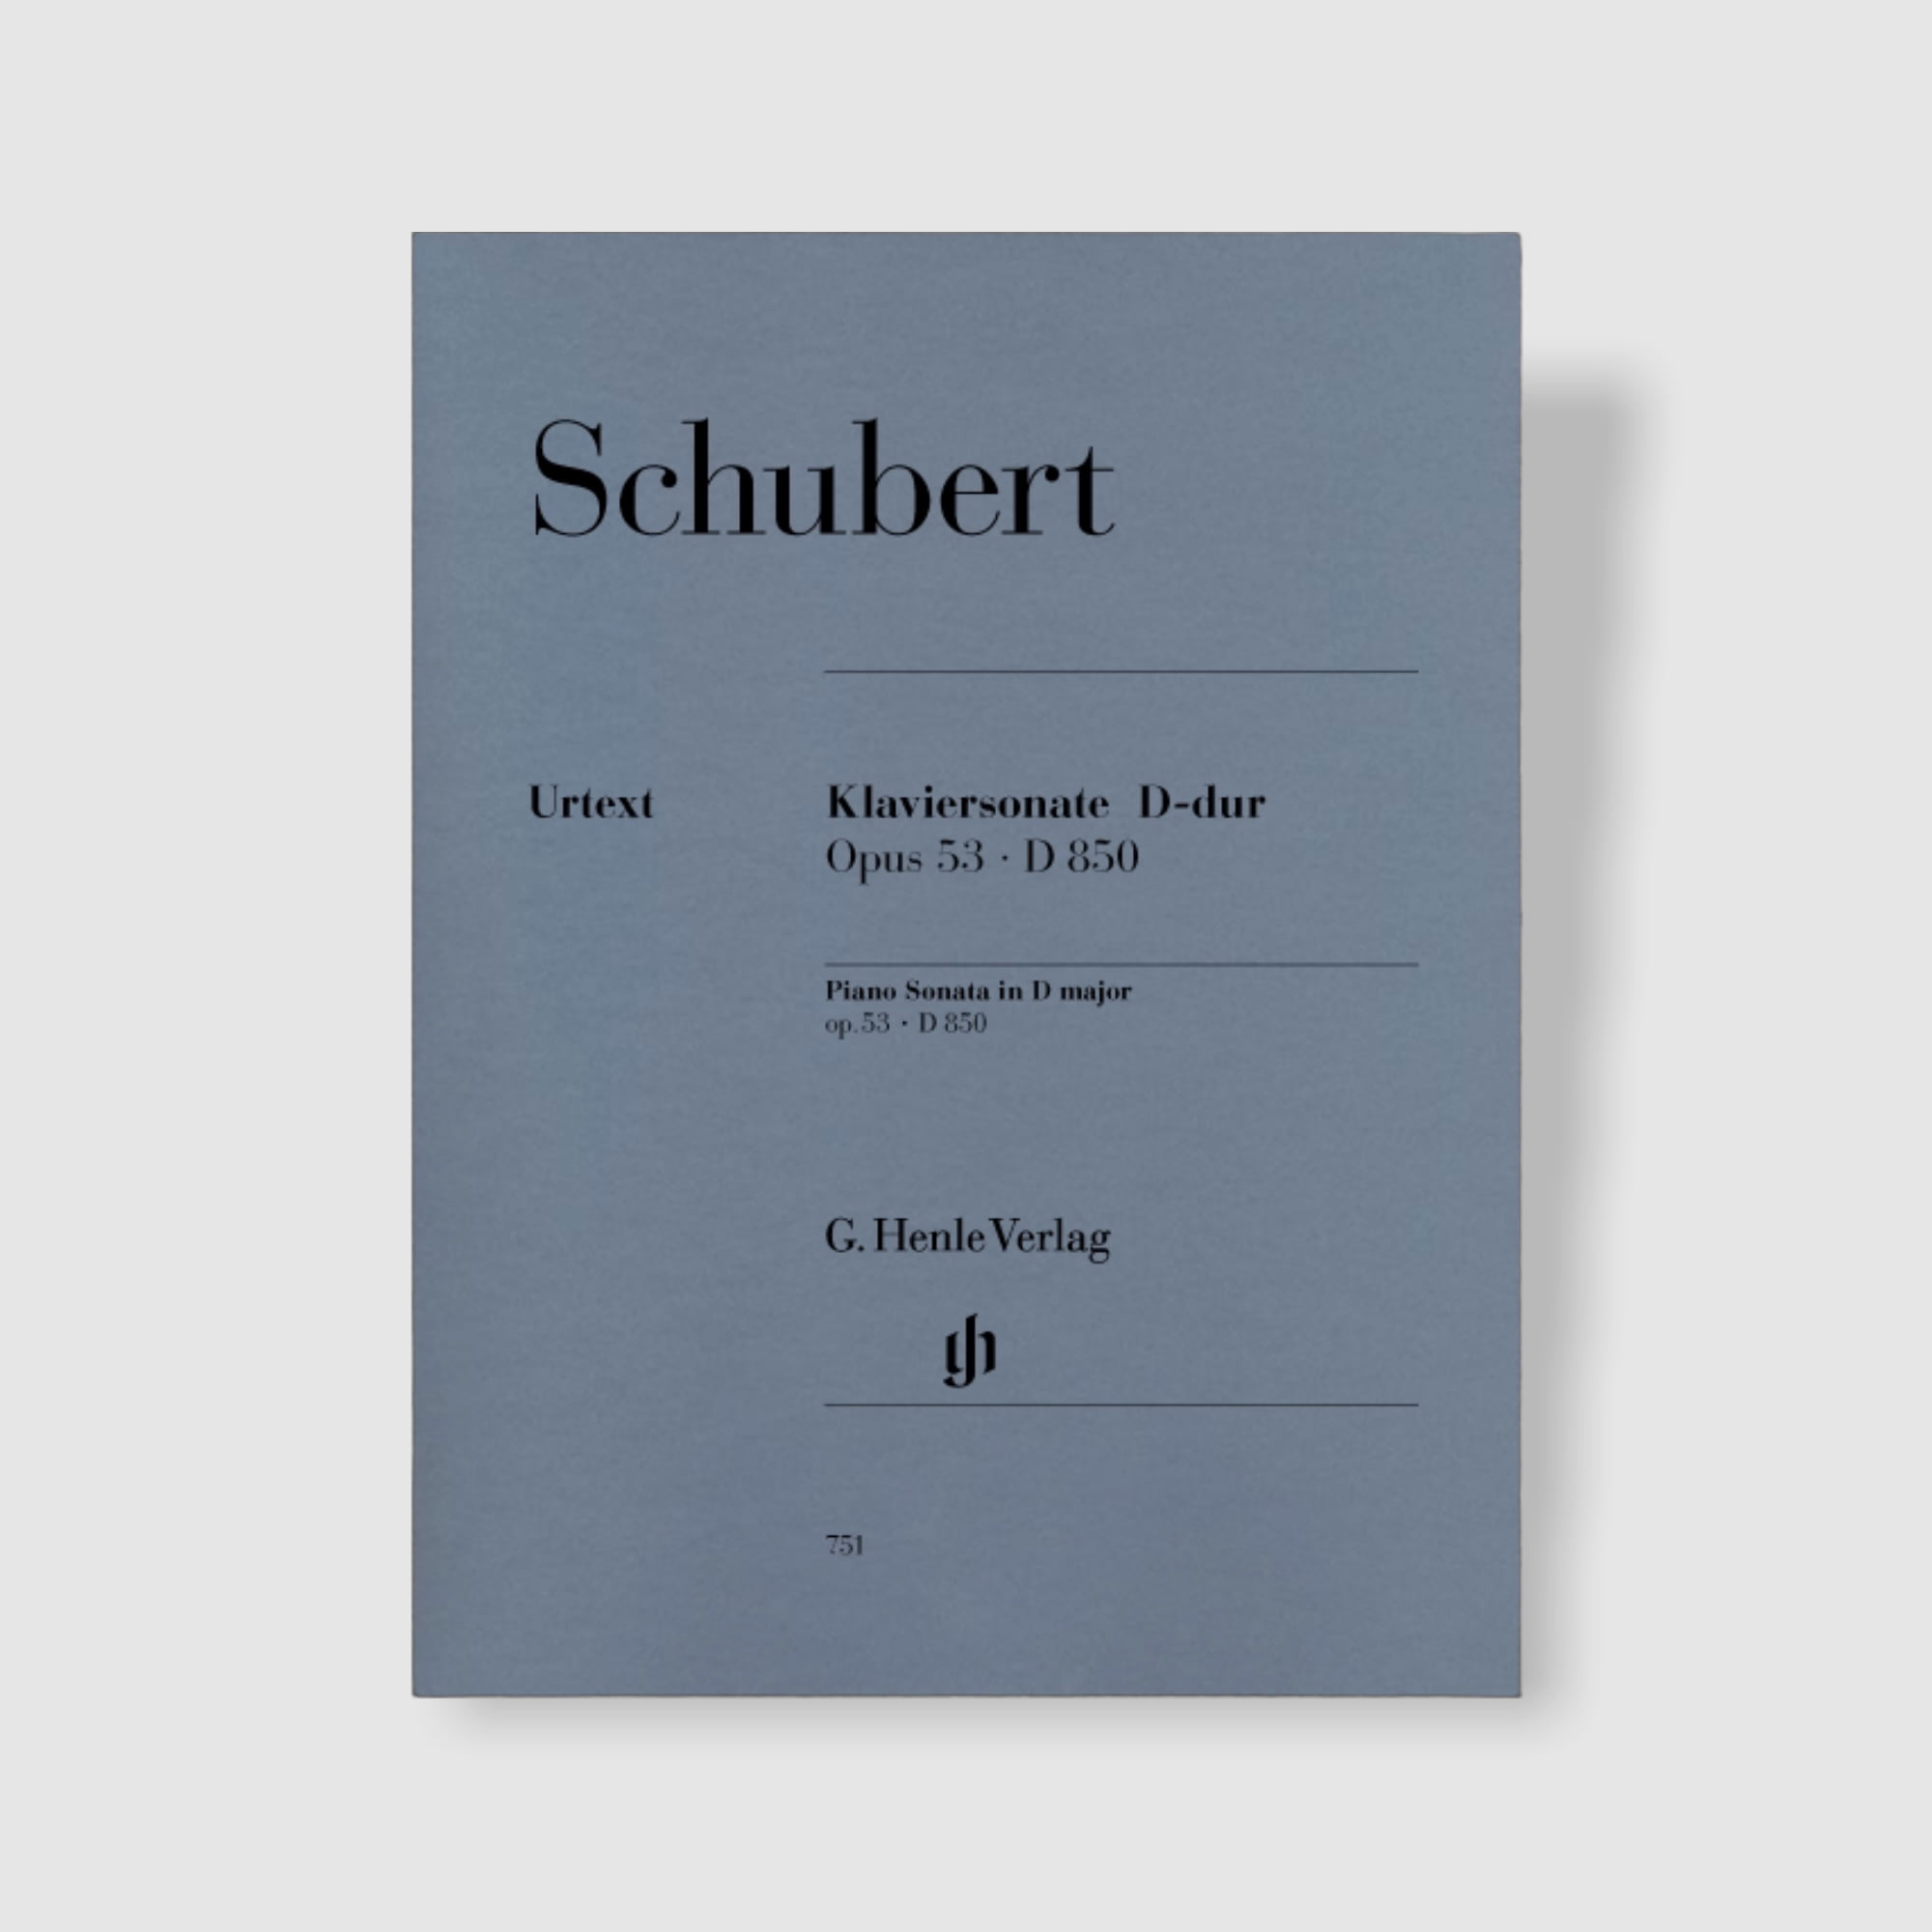 슈베르트 피아노 소나타 in D Major, Op. 53 D 850